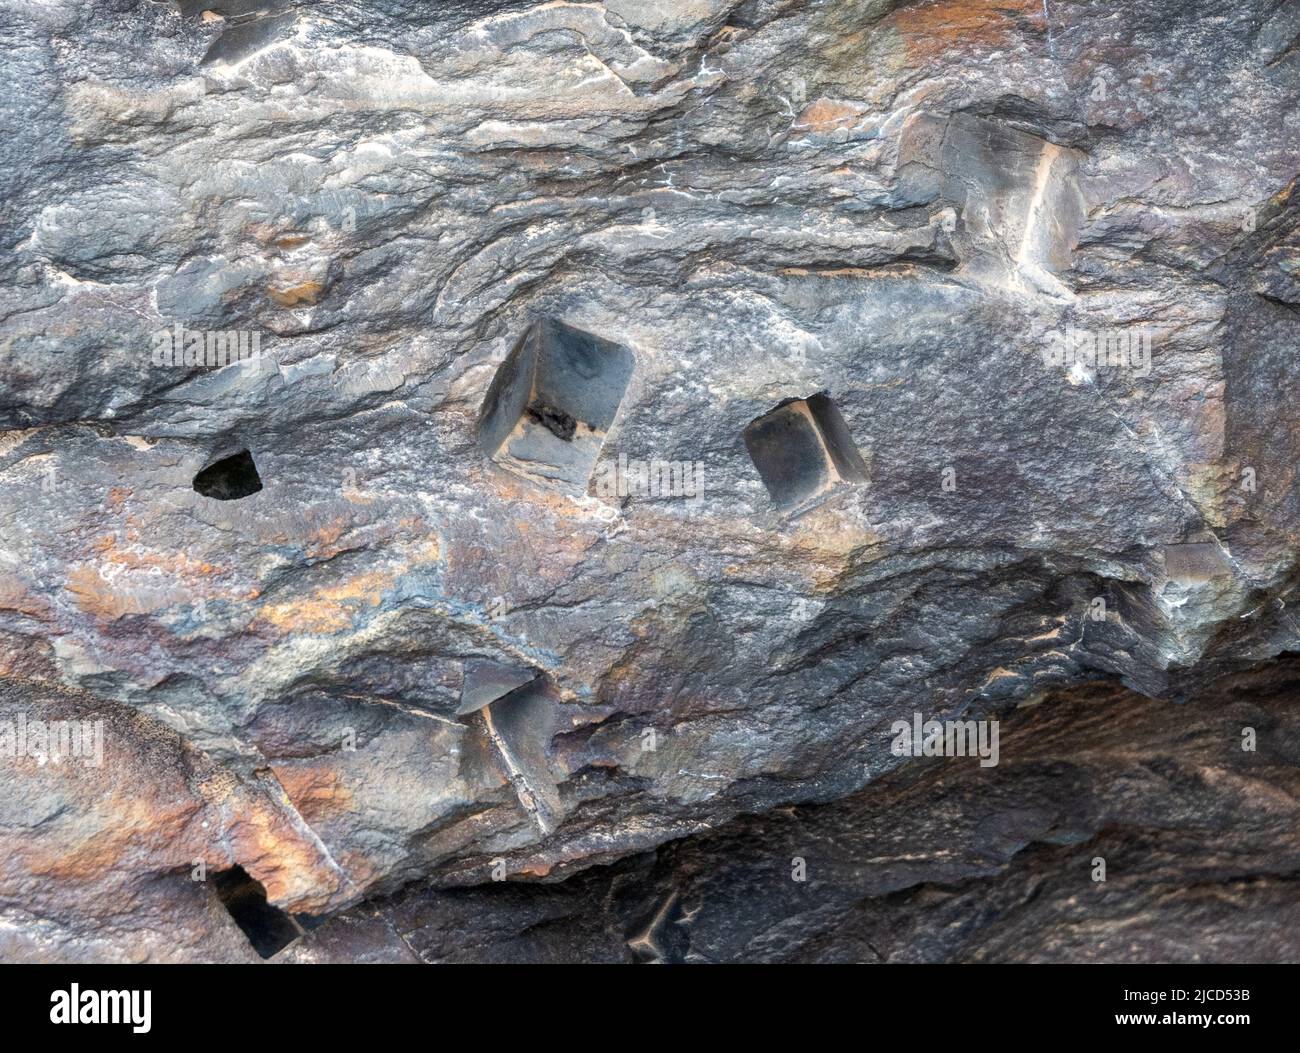 Kubisch geformte Löcher wurden im grauen Schiefer zurückgelassen, nachdem Pyritkristalle verwittert waren. Kaukasus. Republik Georgien. Stockfoto